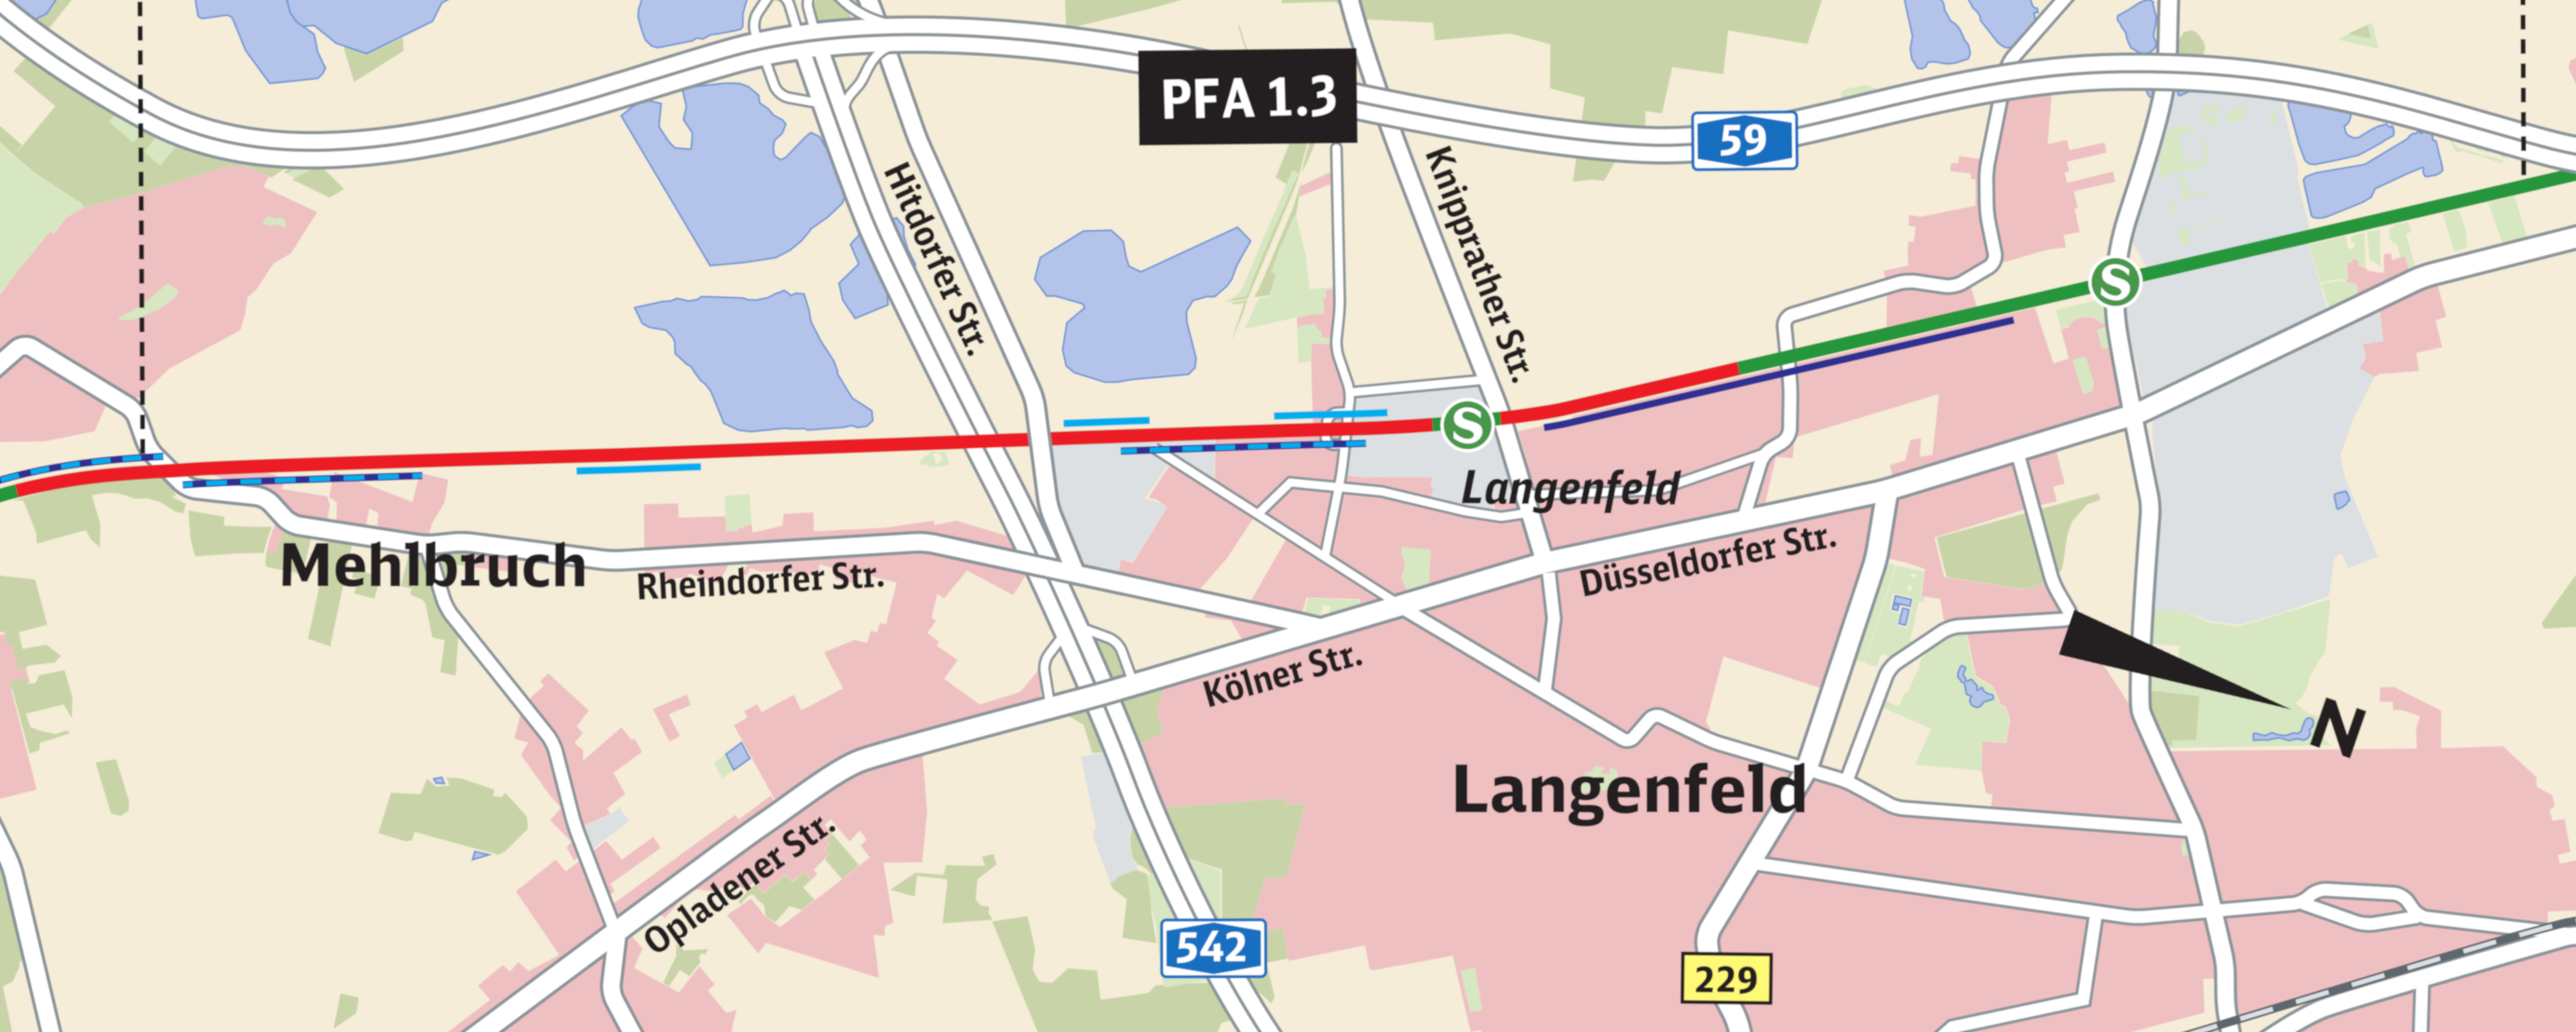 Kartenausschnitt für die aktuellen Maßnahmen vor Ort in Langenfeld